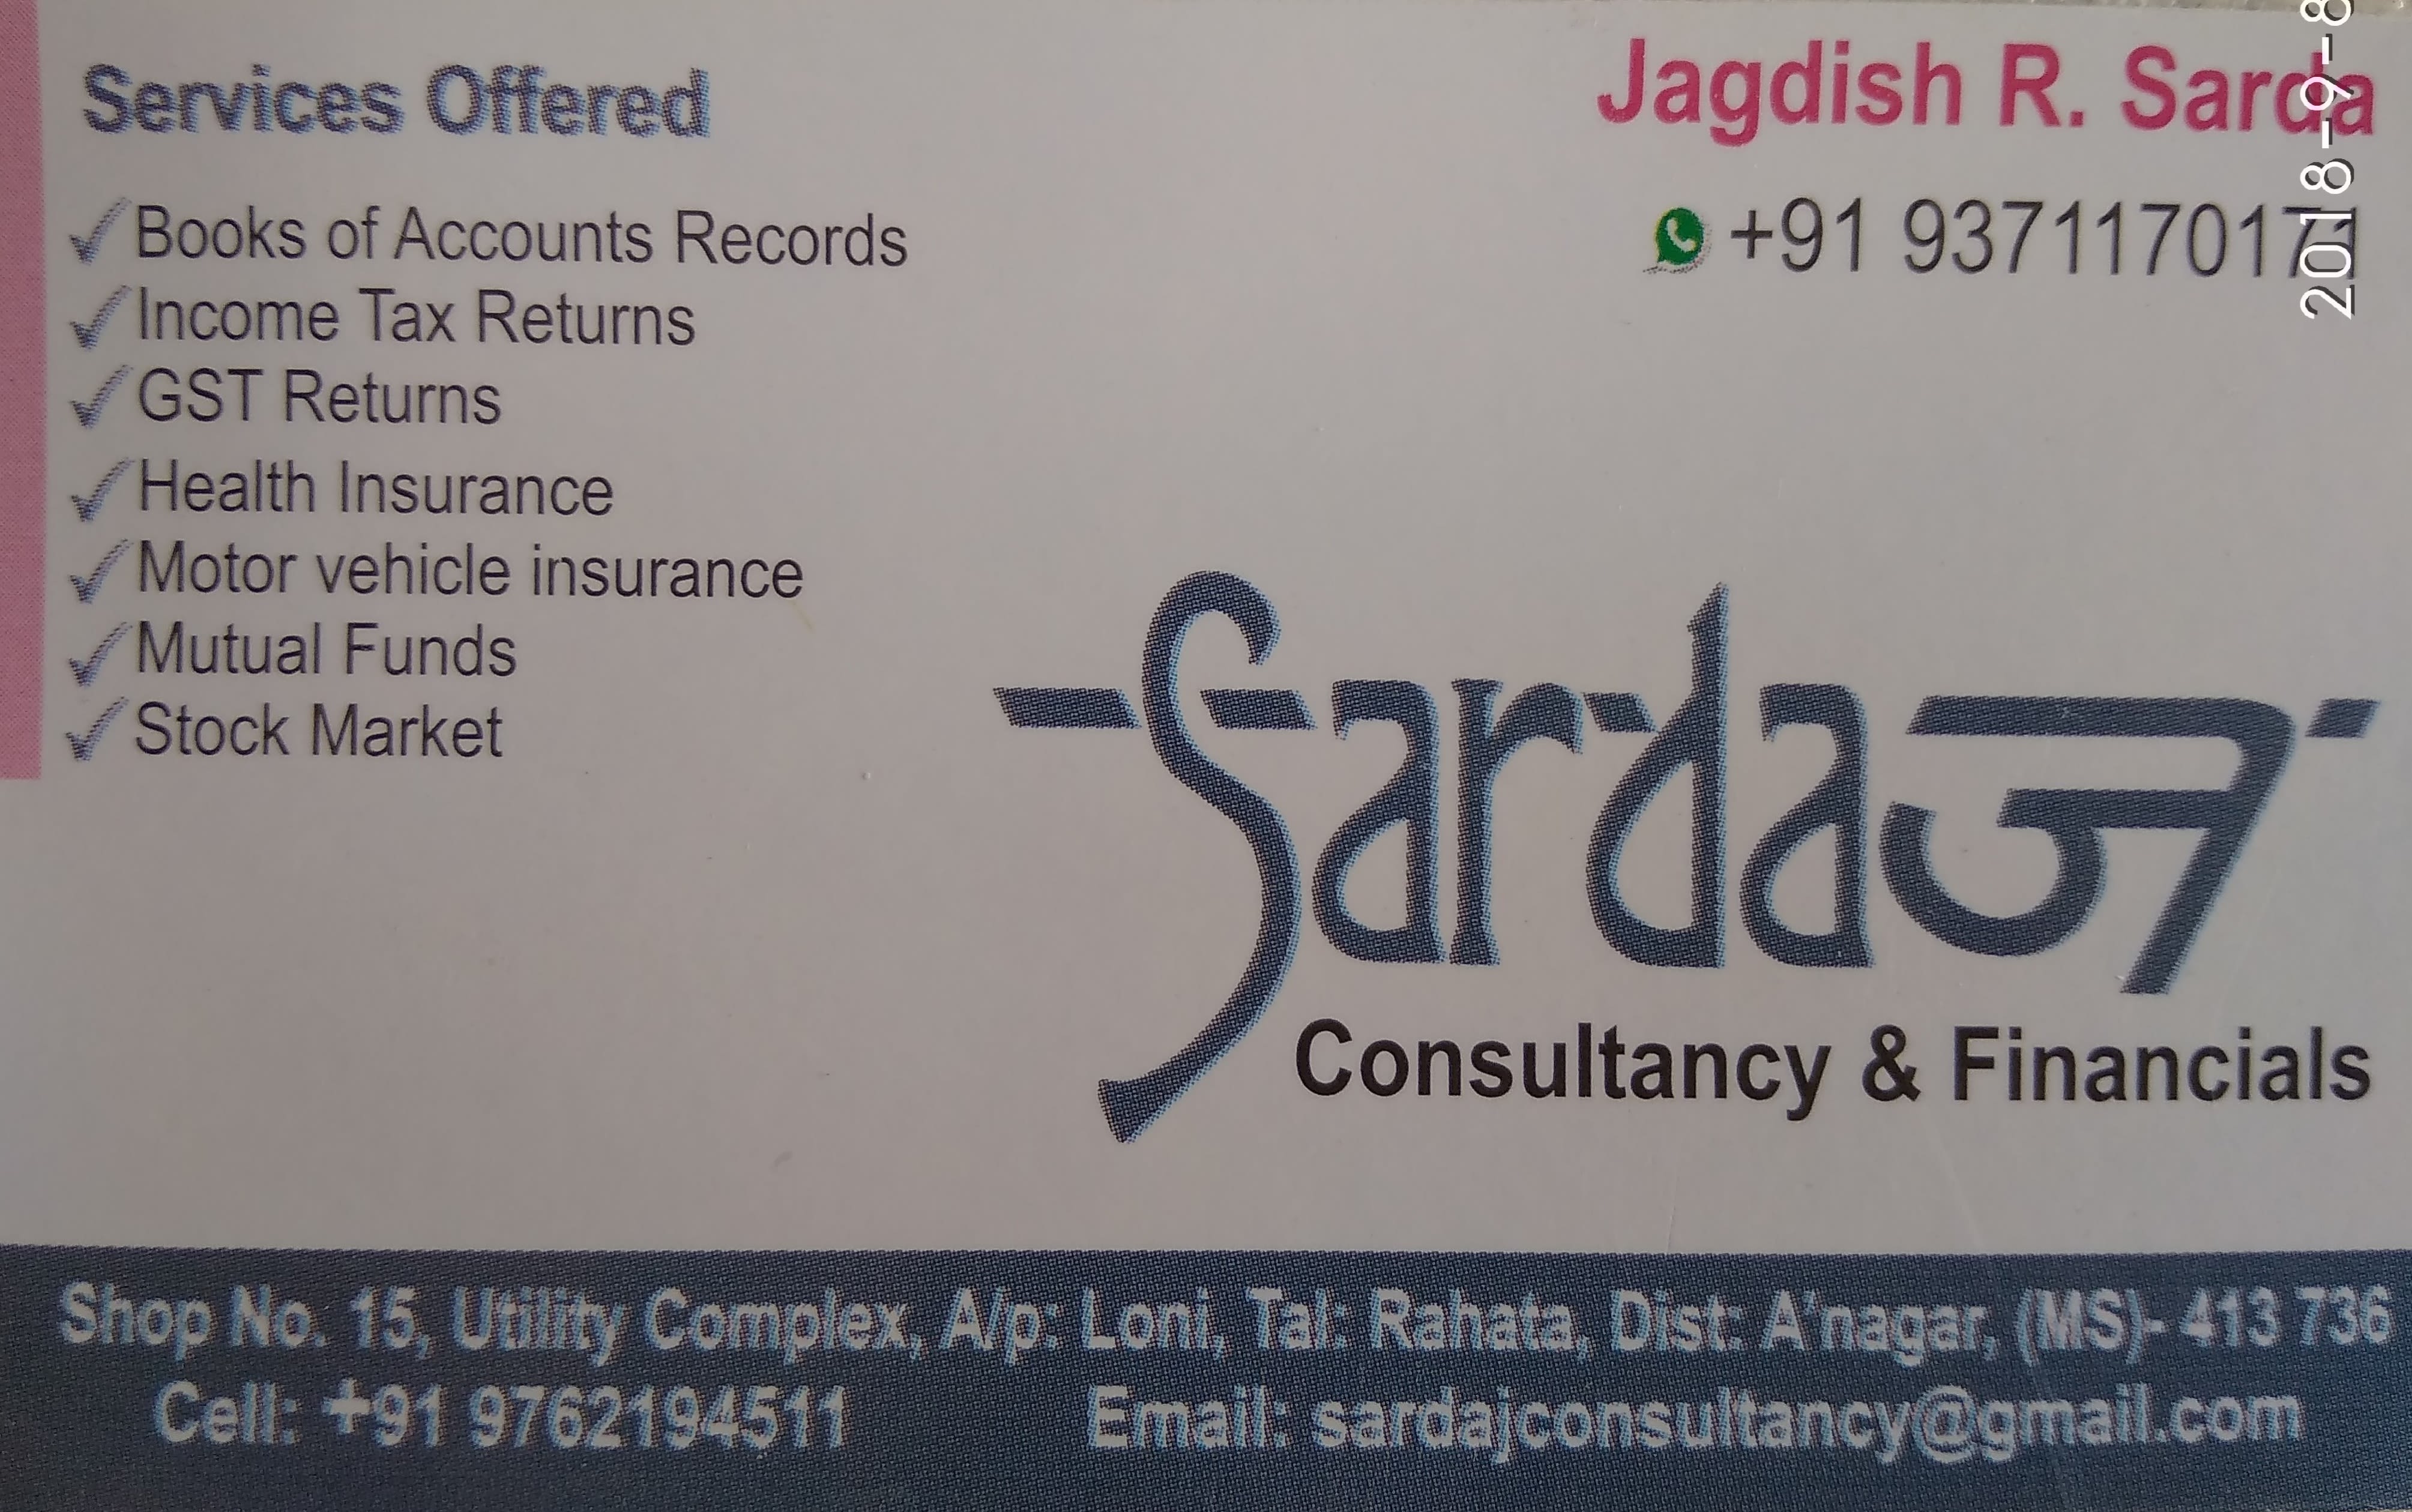 Sardaj Consultancy and Financials